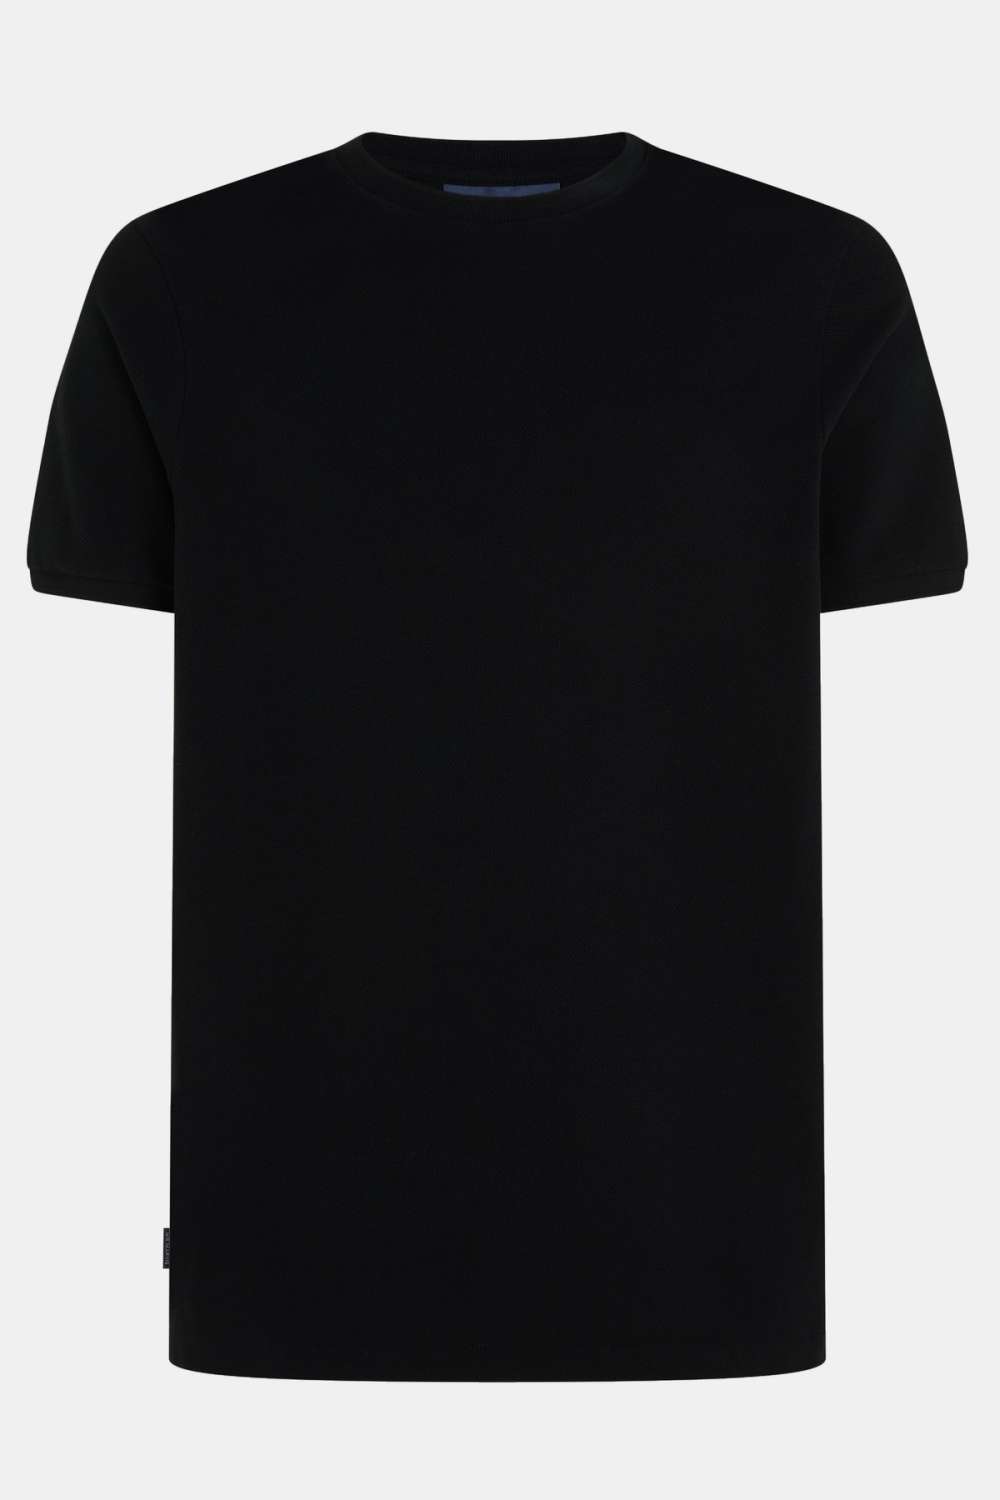 Blackjacks - T-shirt Piqué